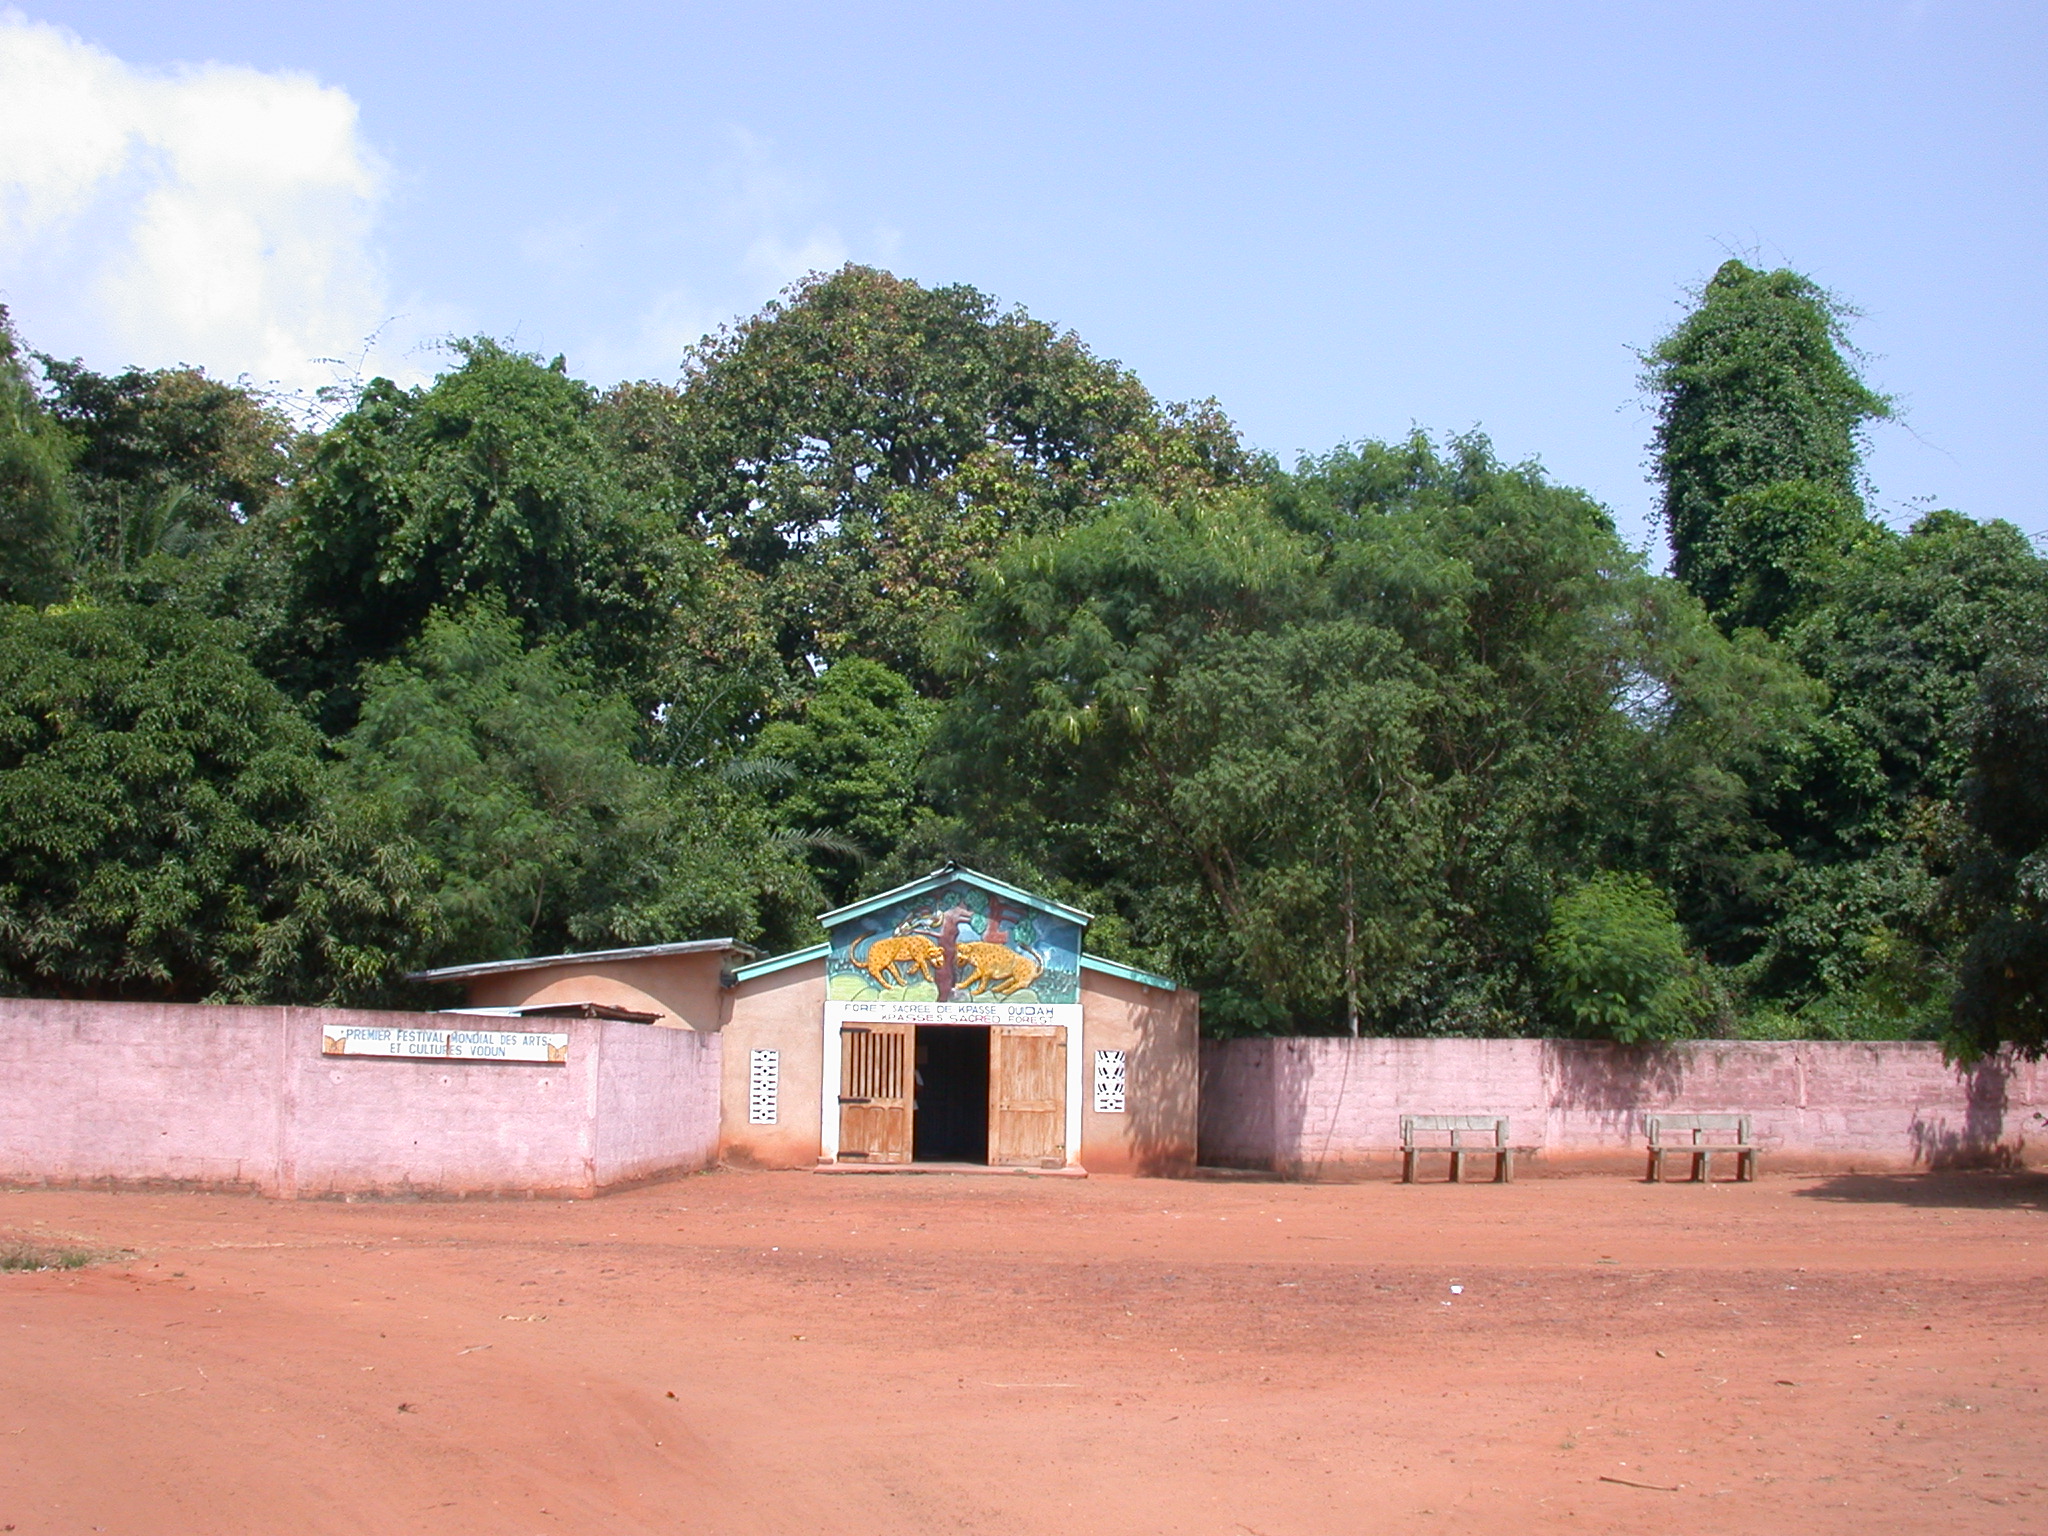 Entrance of Kpasse Sacred Forest, Ouidah, Benin